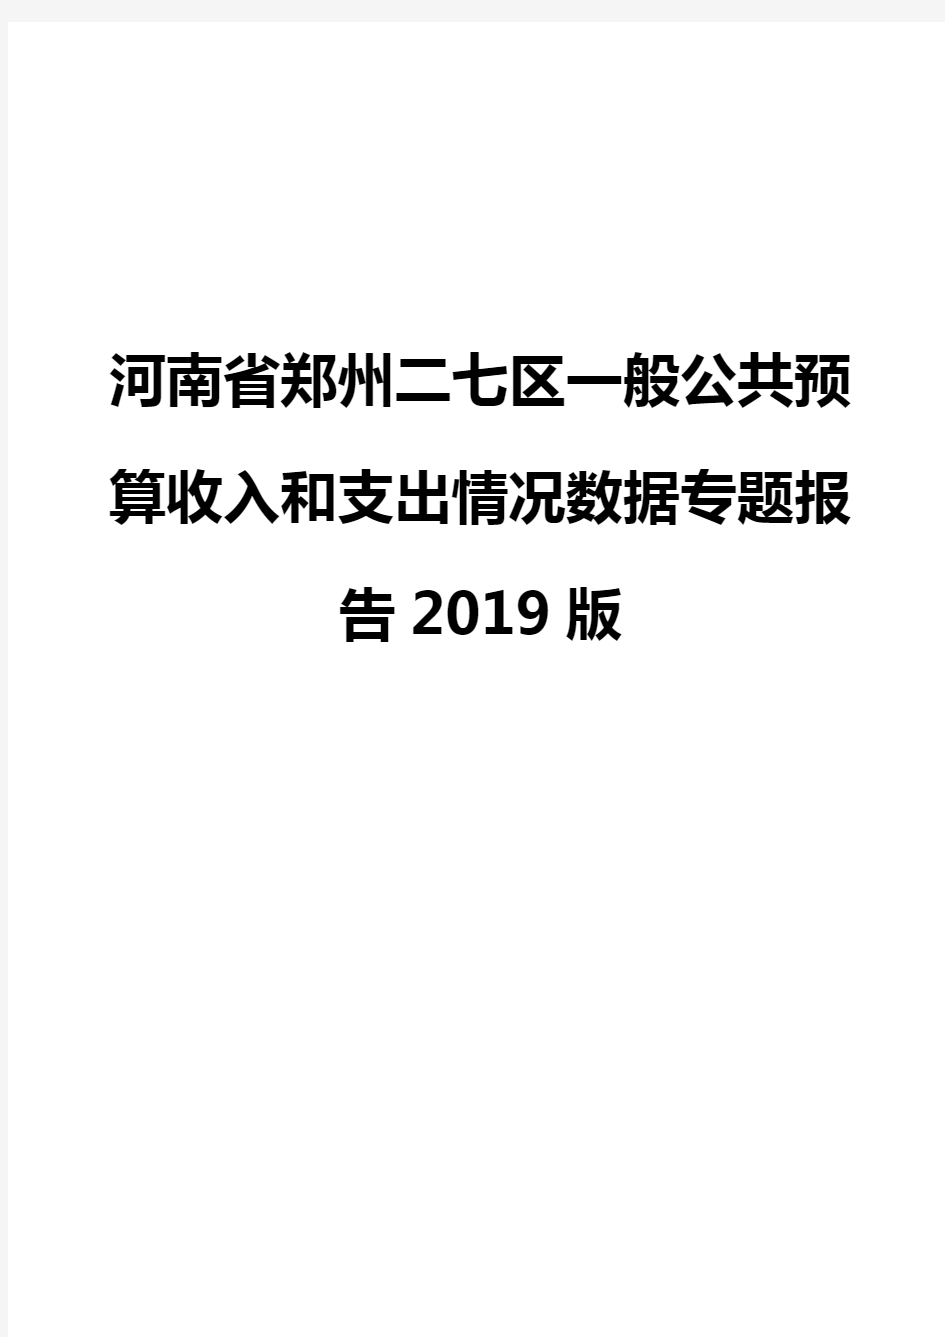 河南省郑州二七区一般公共预算收入和支出情况数据专题报告2019版